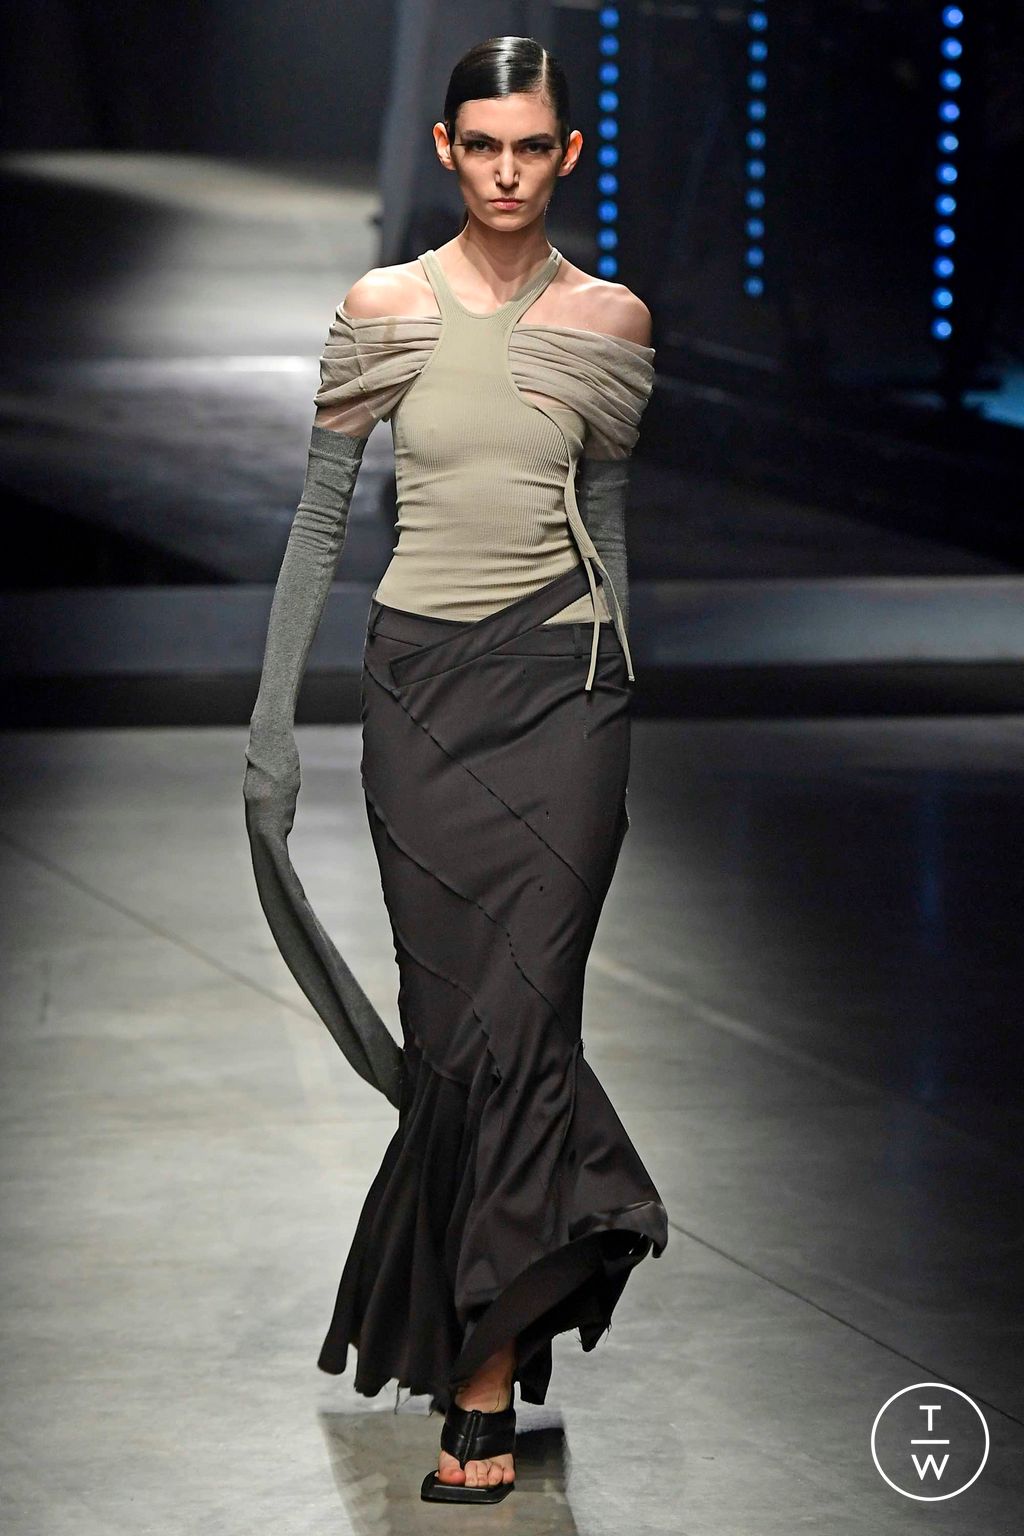 Andreadamo FW23 womenswear #4 - Tagwalk: The Fashion Search Engine